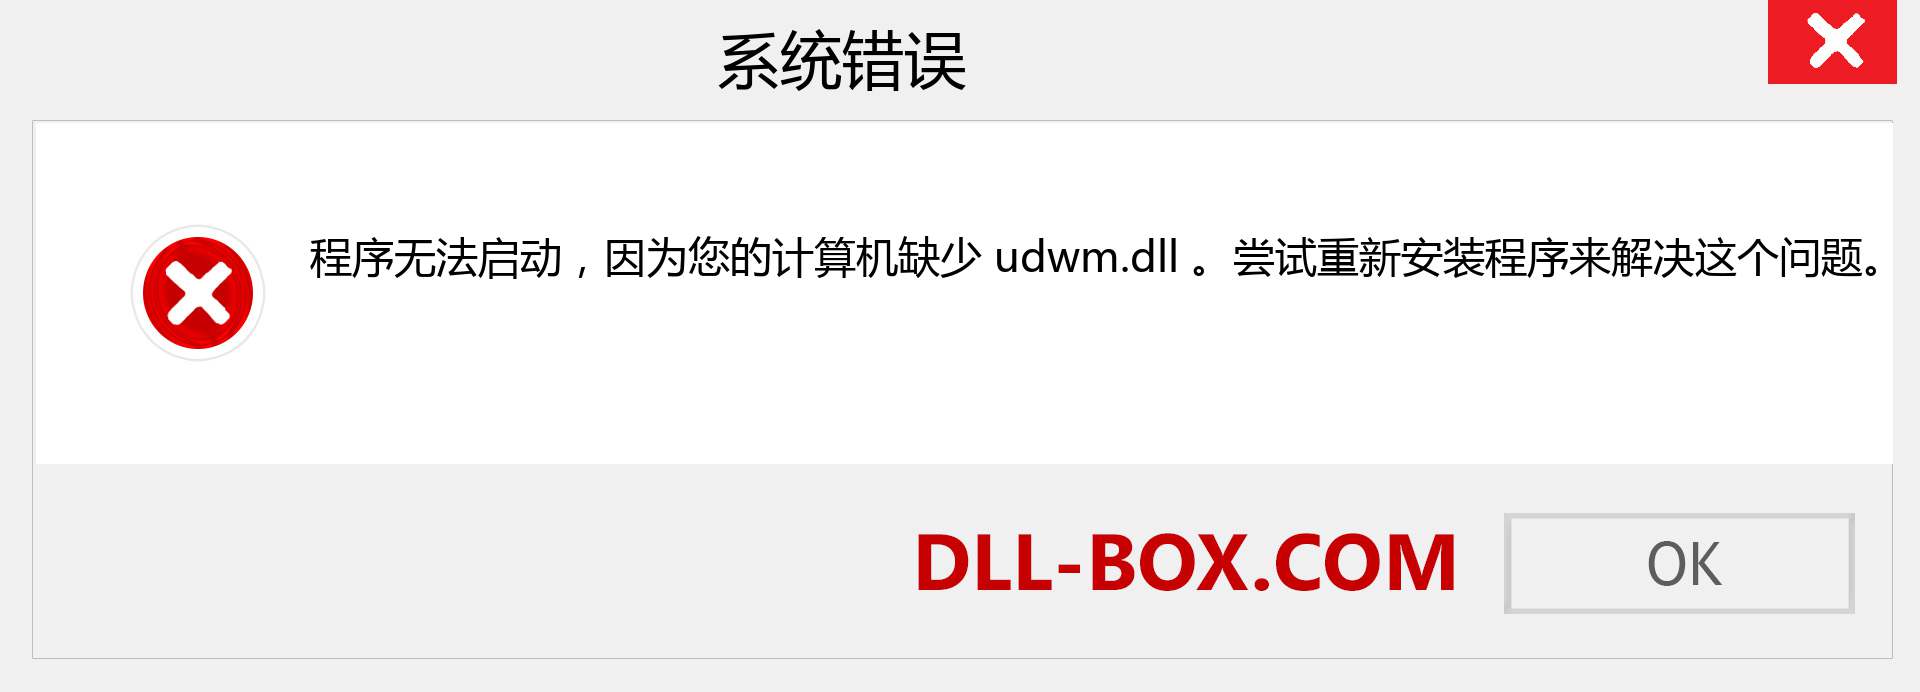 udwm.dll 文件丢失？。 适用于 Windows 7、8、10 的下载 - 修复 Windows、照片、图像上的 udwm dll 丢失错误